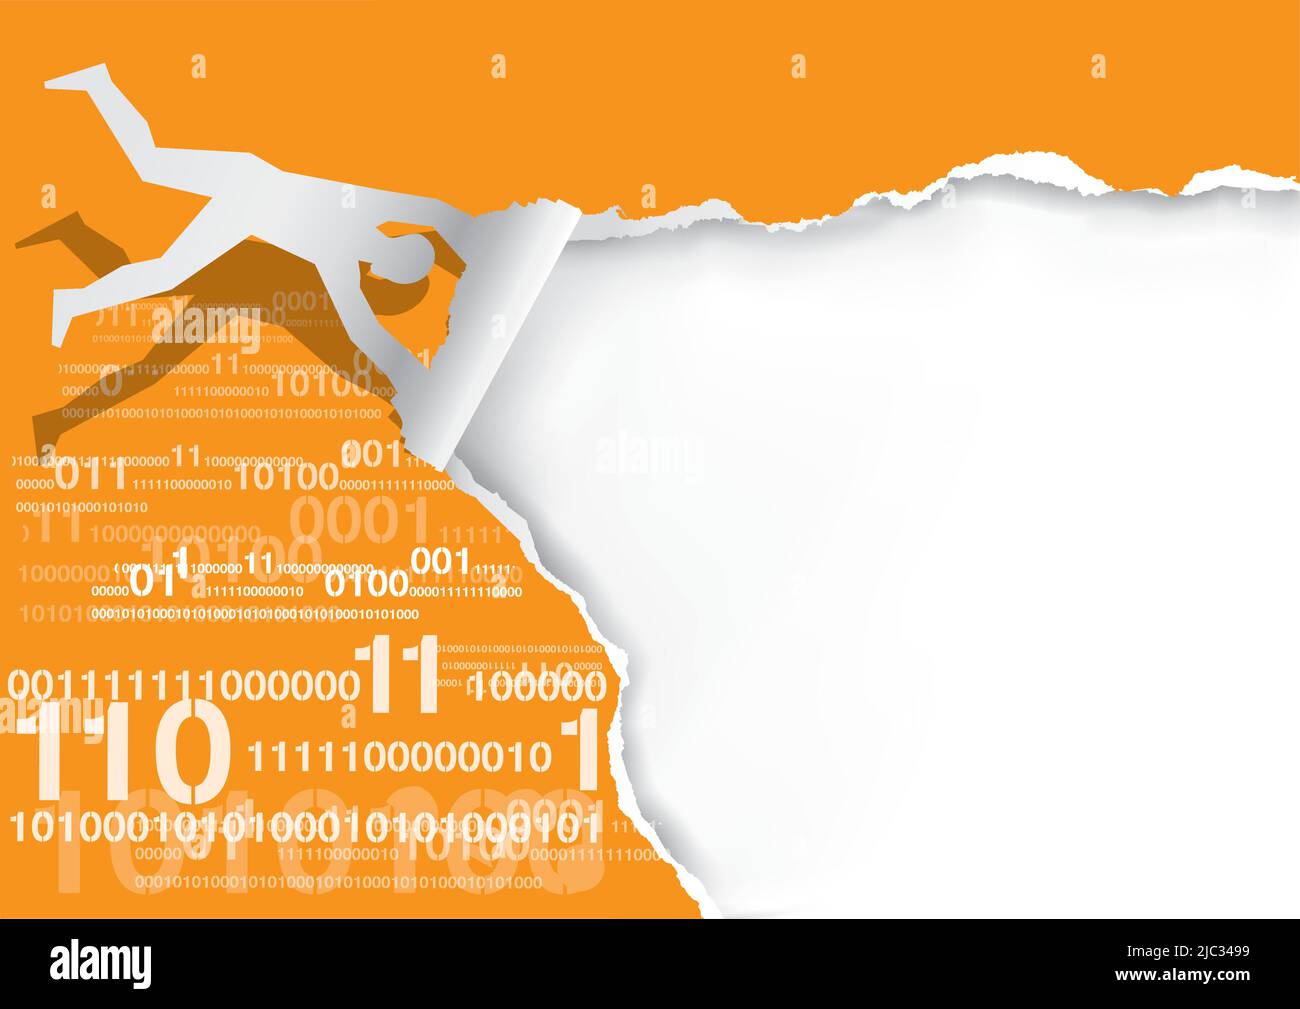 Carta da strappo Flying man, con codici binari silhouette di carta da uomo che strappa sfondo di carta arancione con codici binari e numeri digitali. Illustrazione Vettoriale